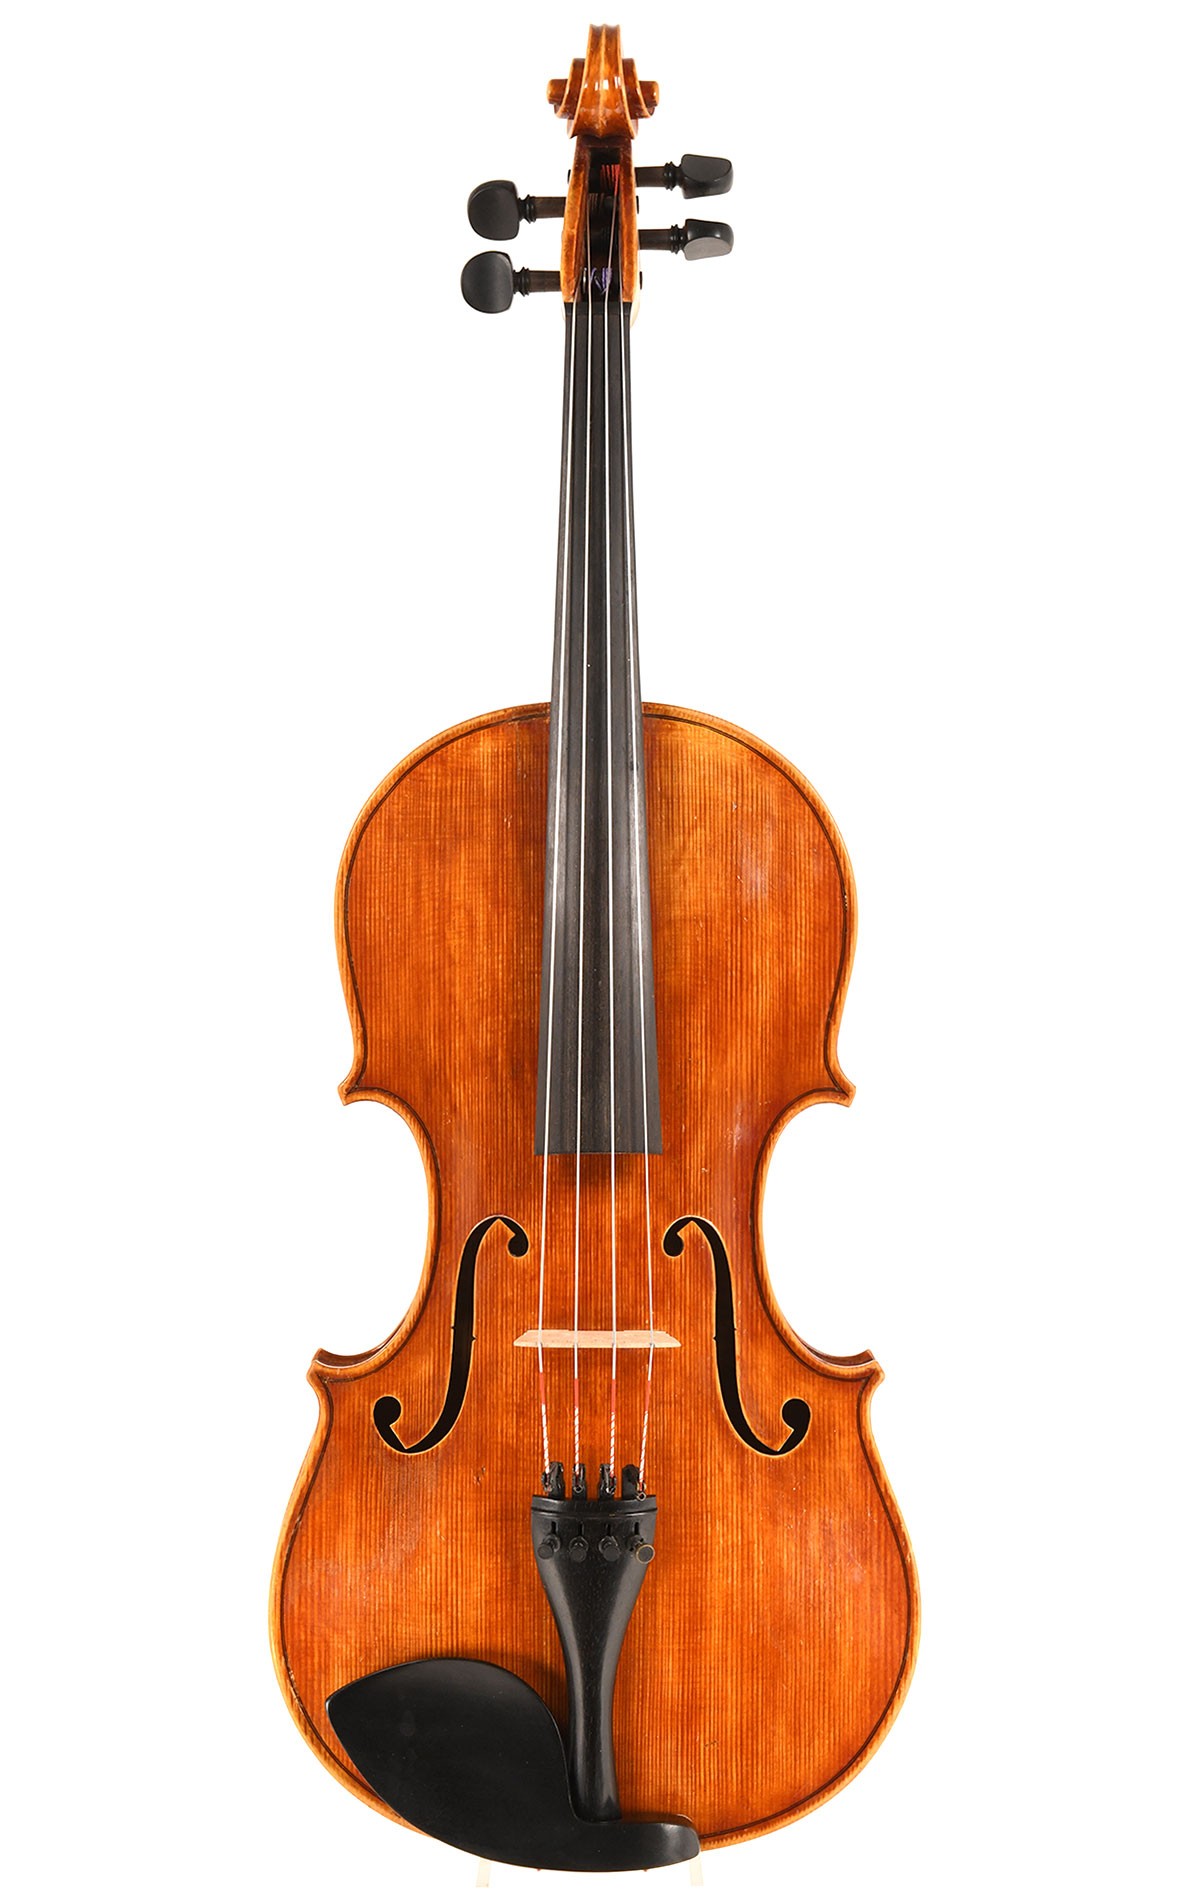 French viola by Jacques Camurat, Paris